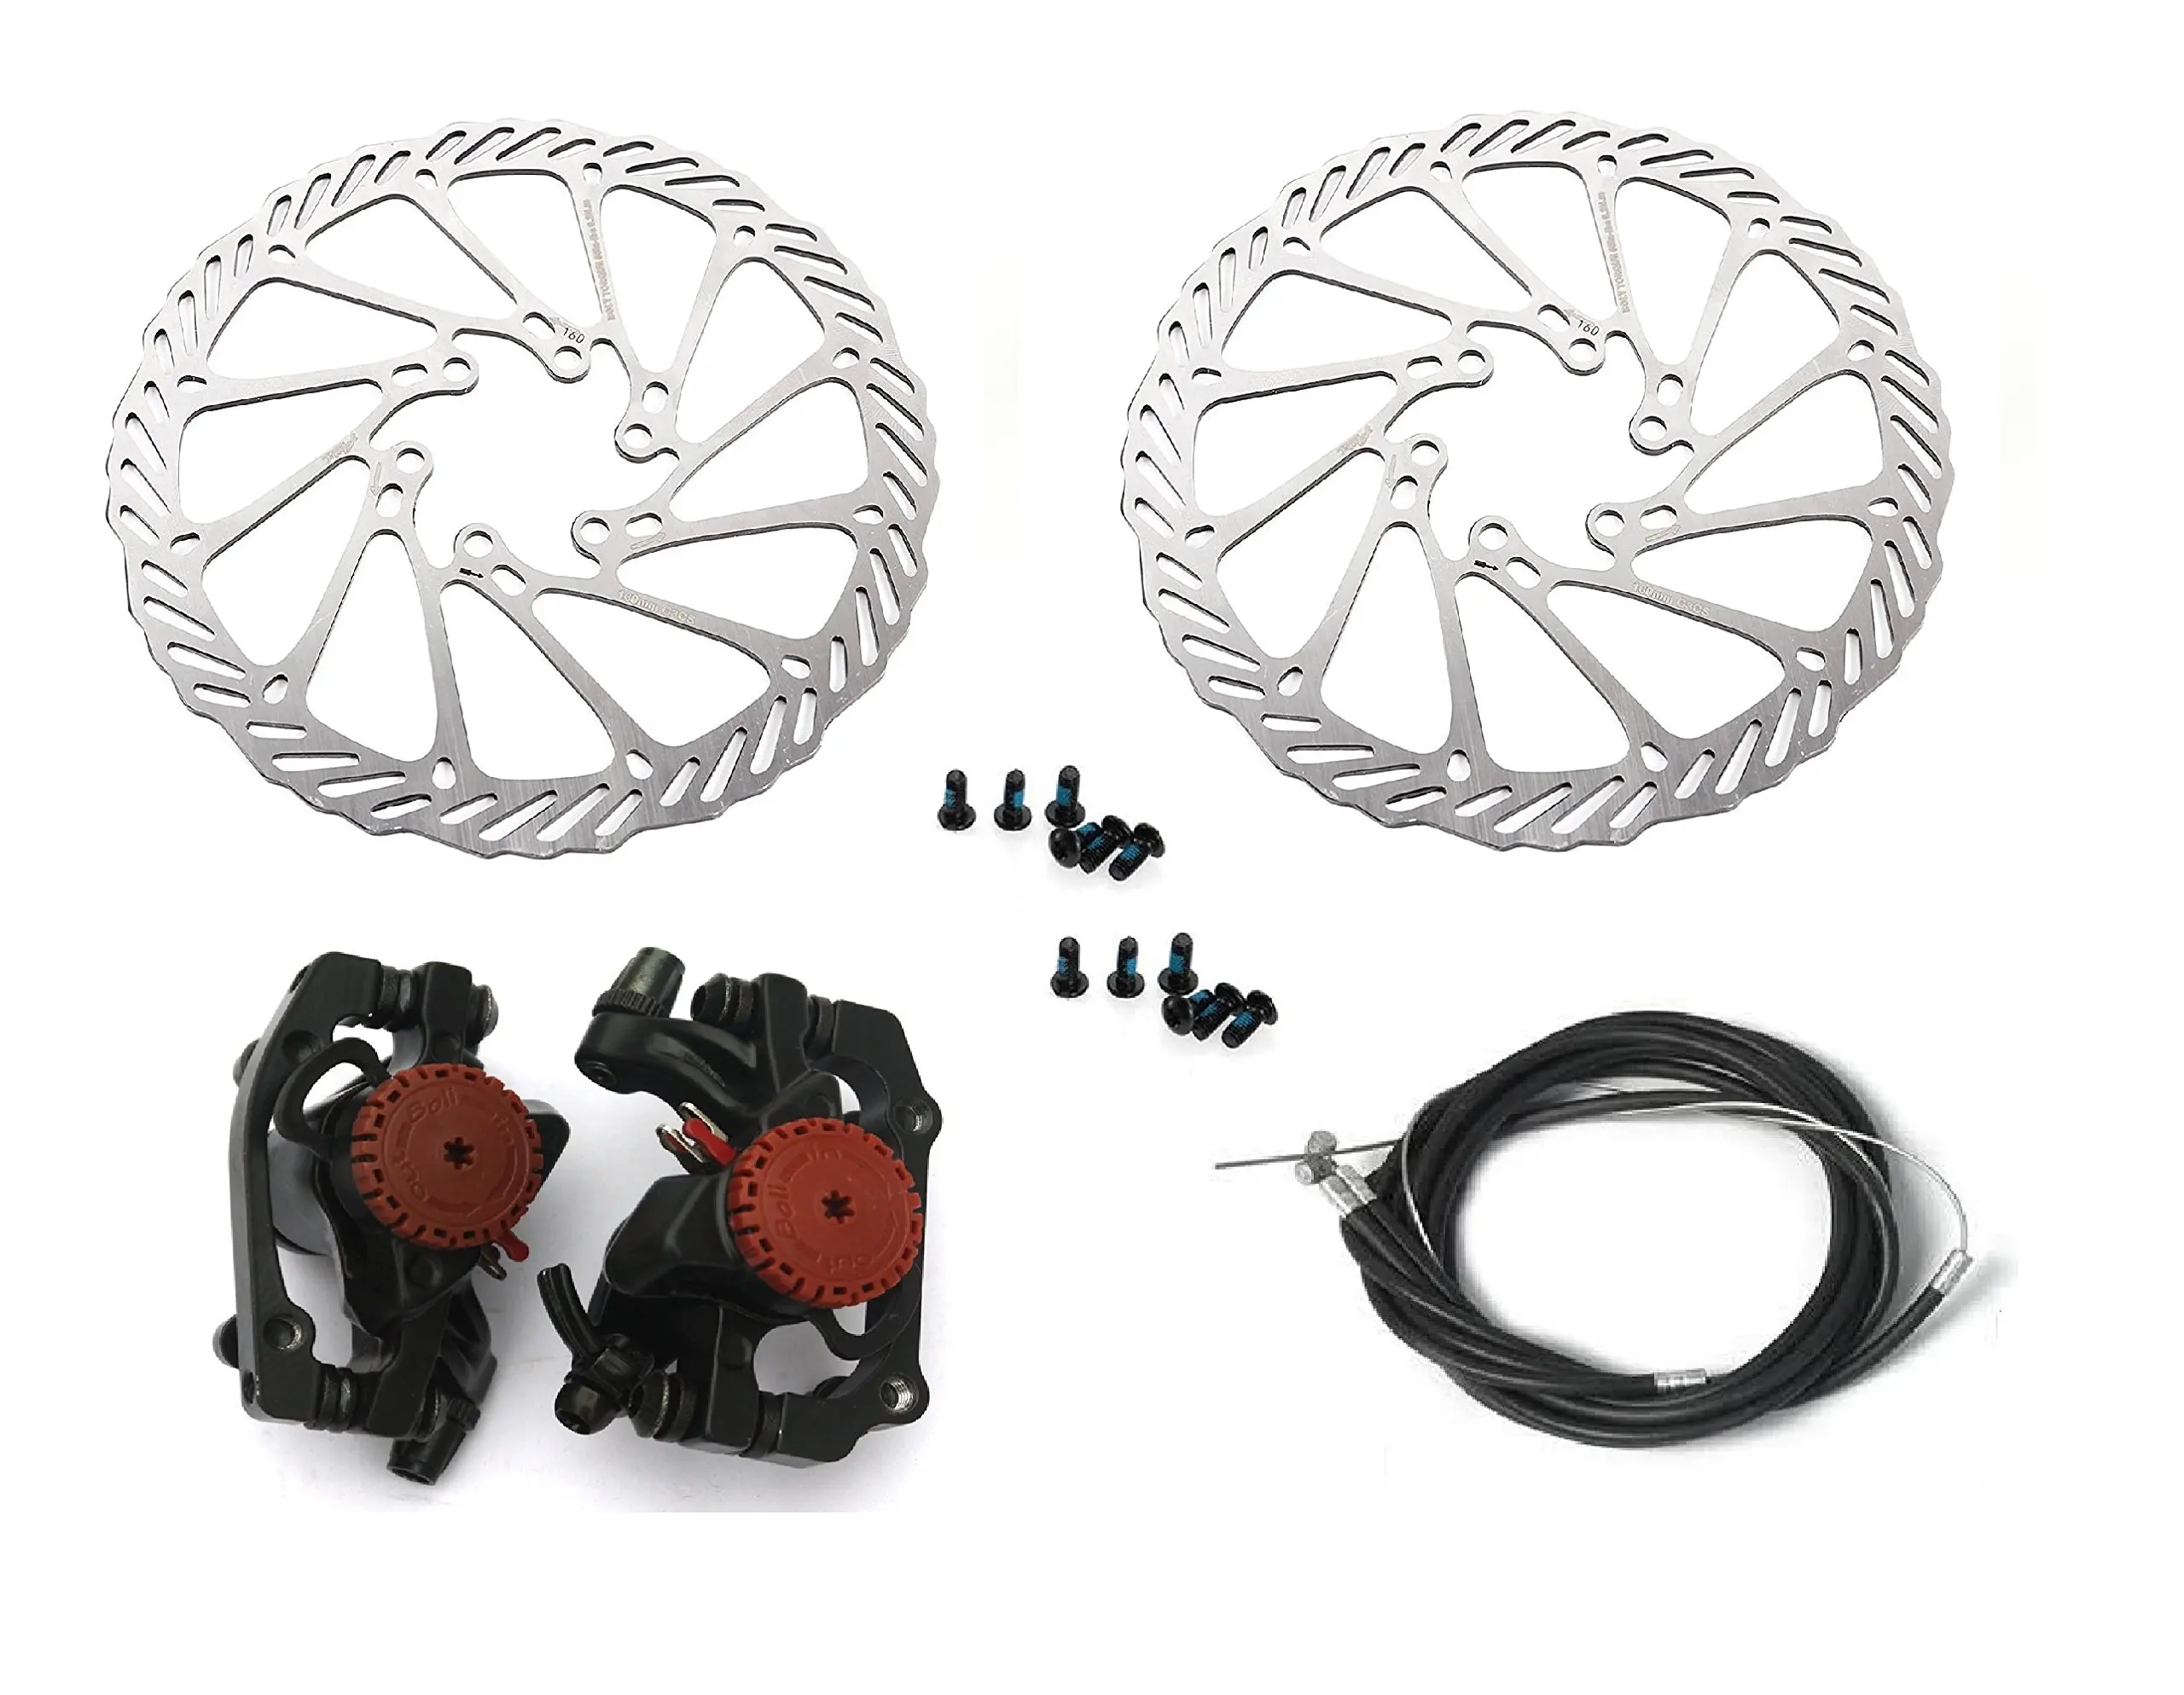 cycle disc brake kit price